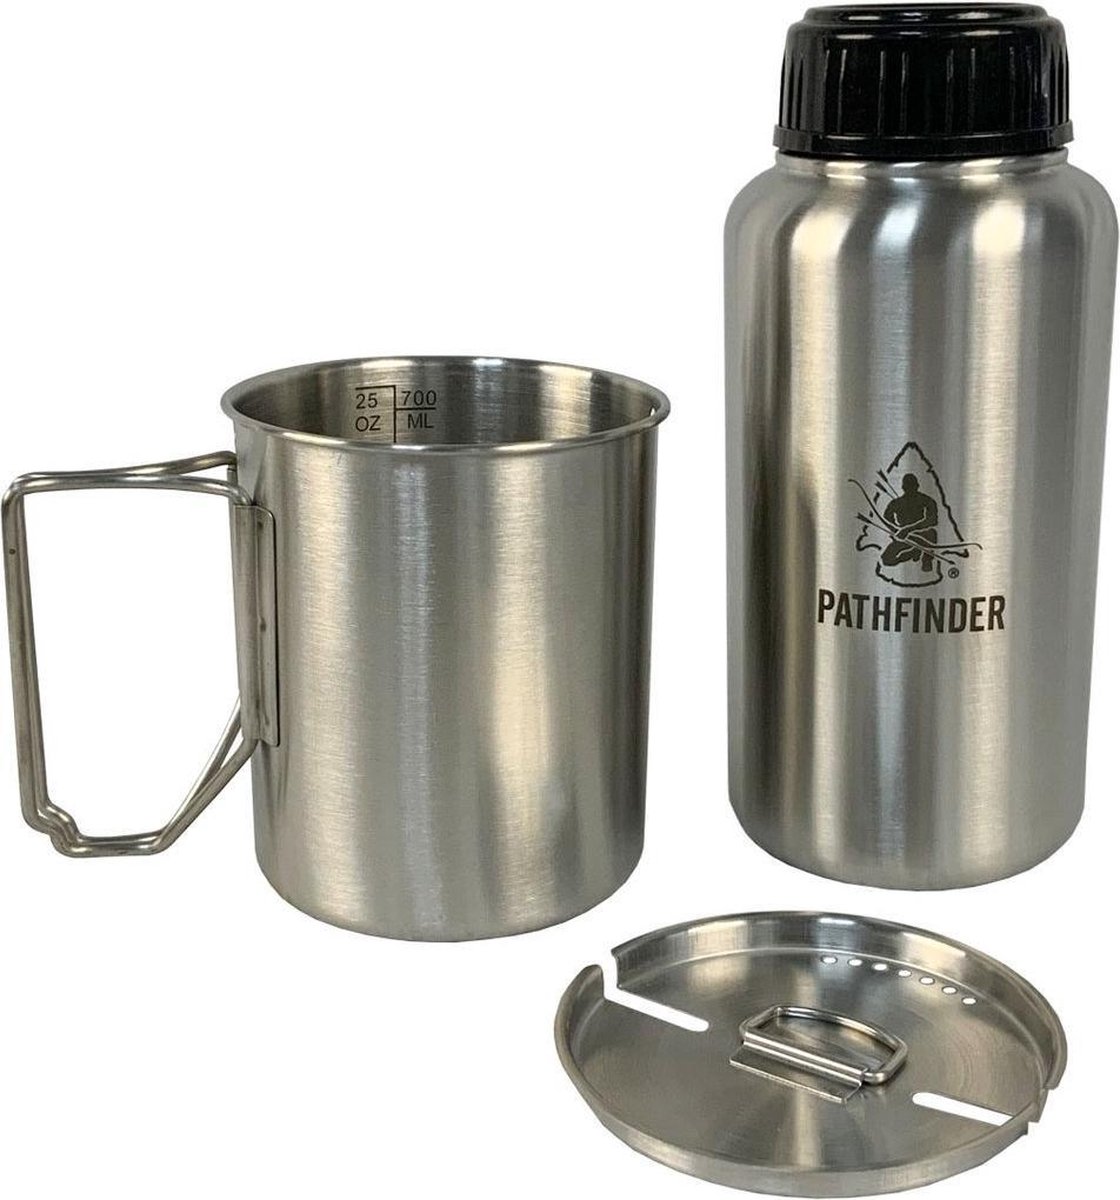 Pathfinder RVS Drinkfles 1 L + Drinkbeker 0,75 L met deksel